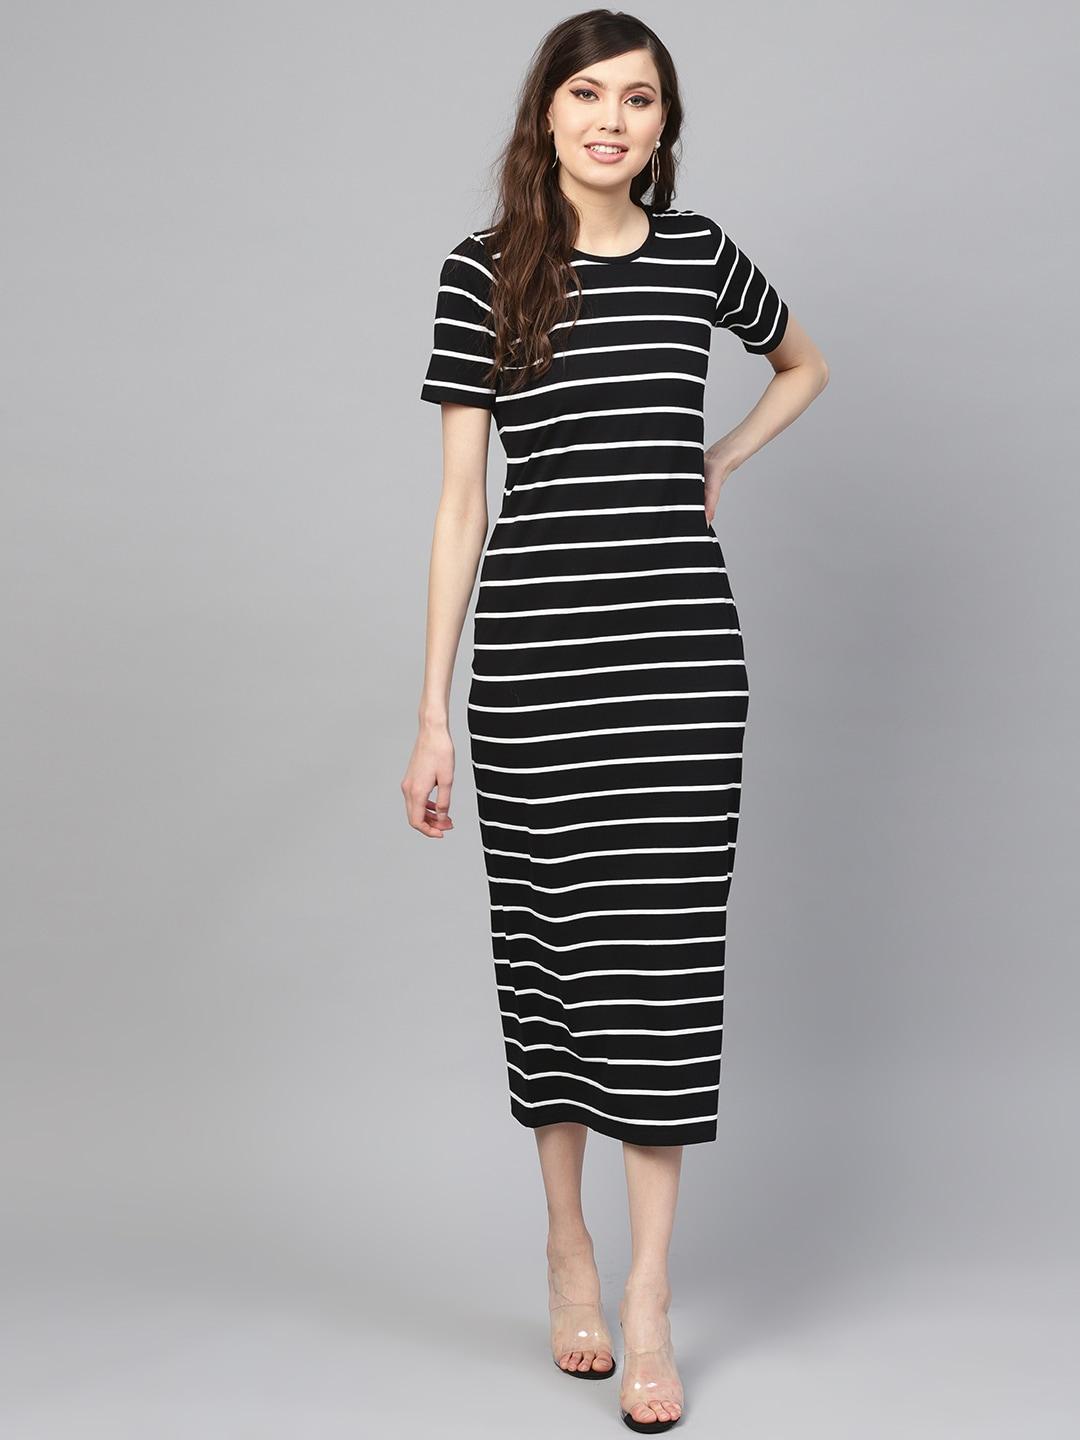 SASSAFRAS Black & White Striped T-shirt Dress